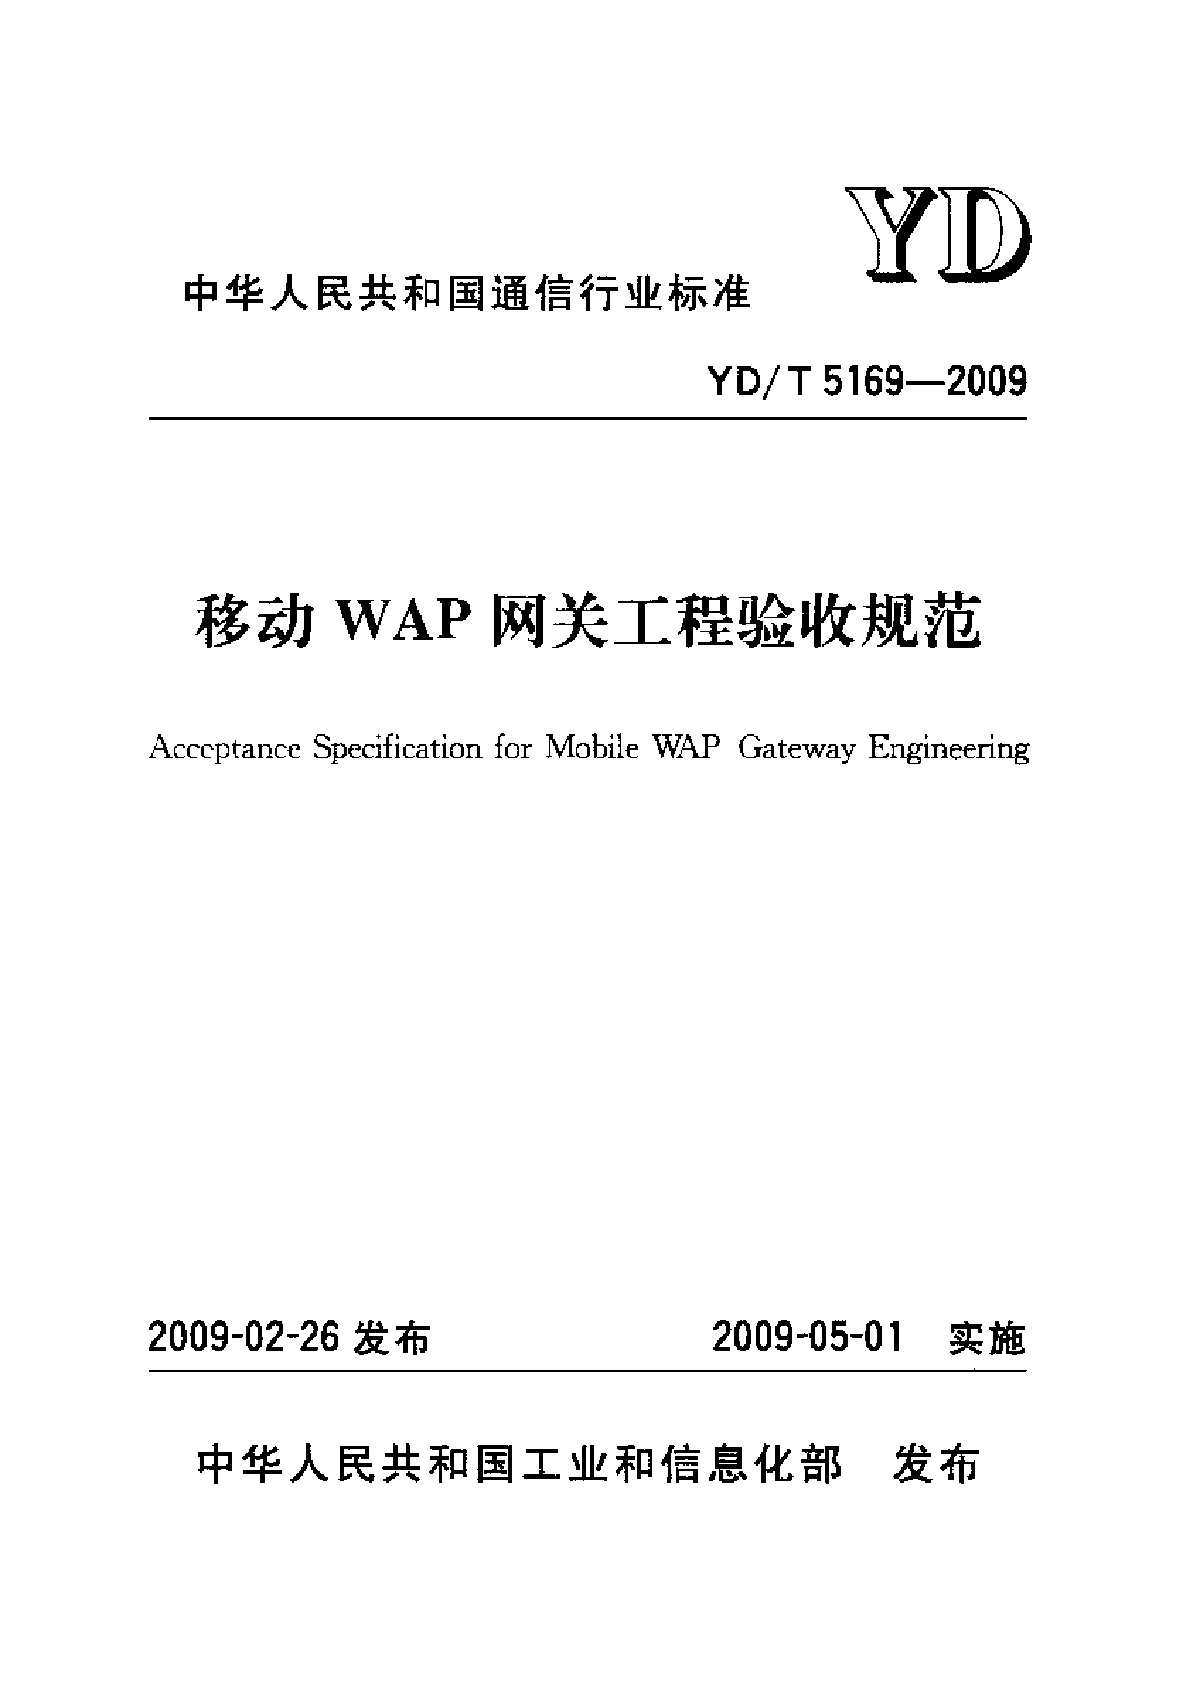 YDT 5169-2009 移动WAP网关工程验收规范